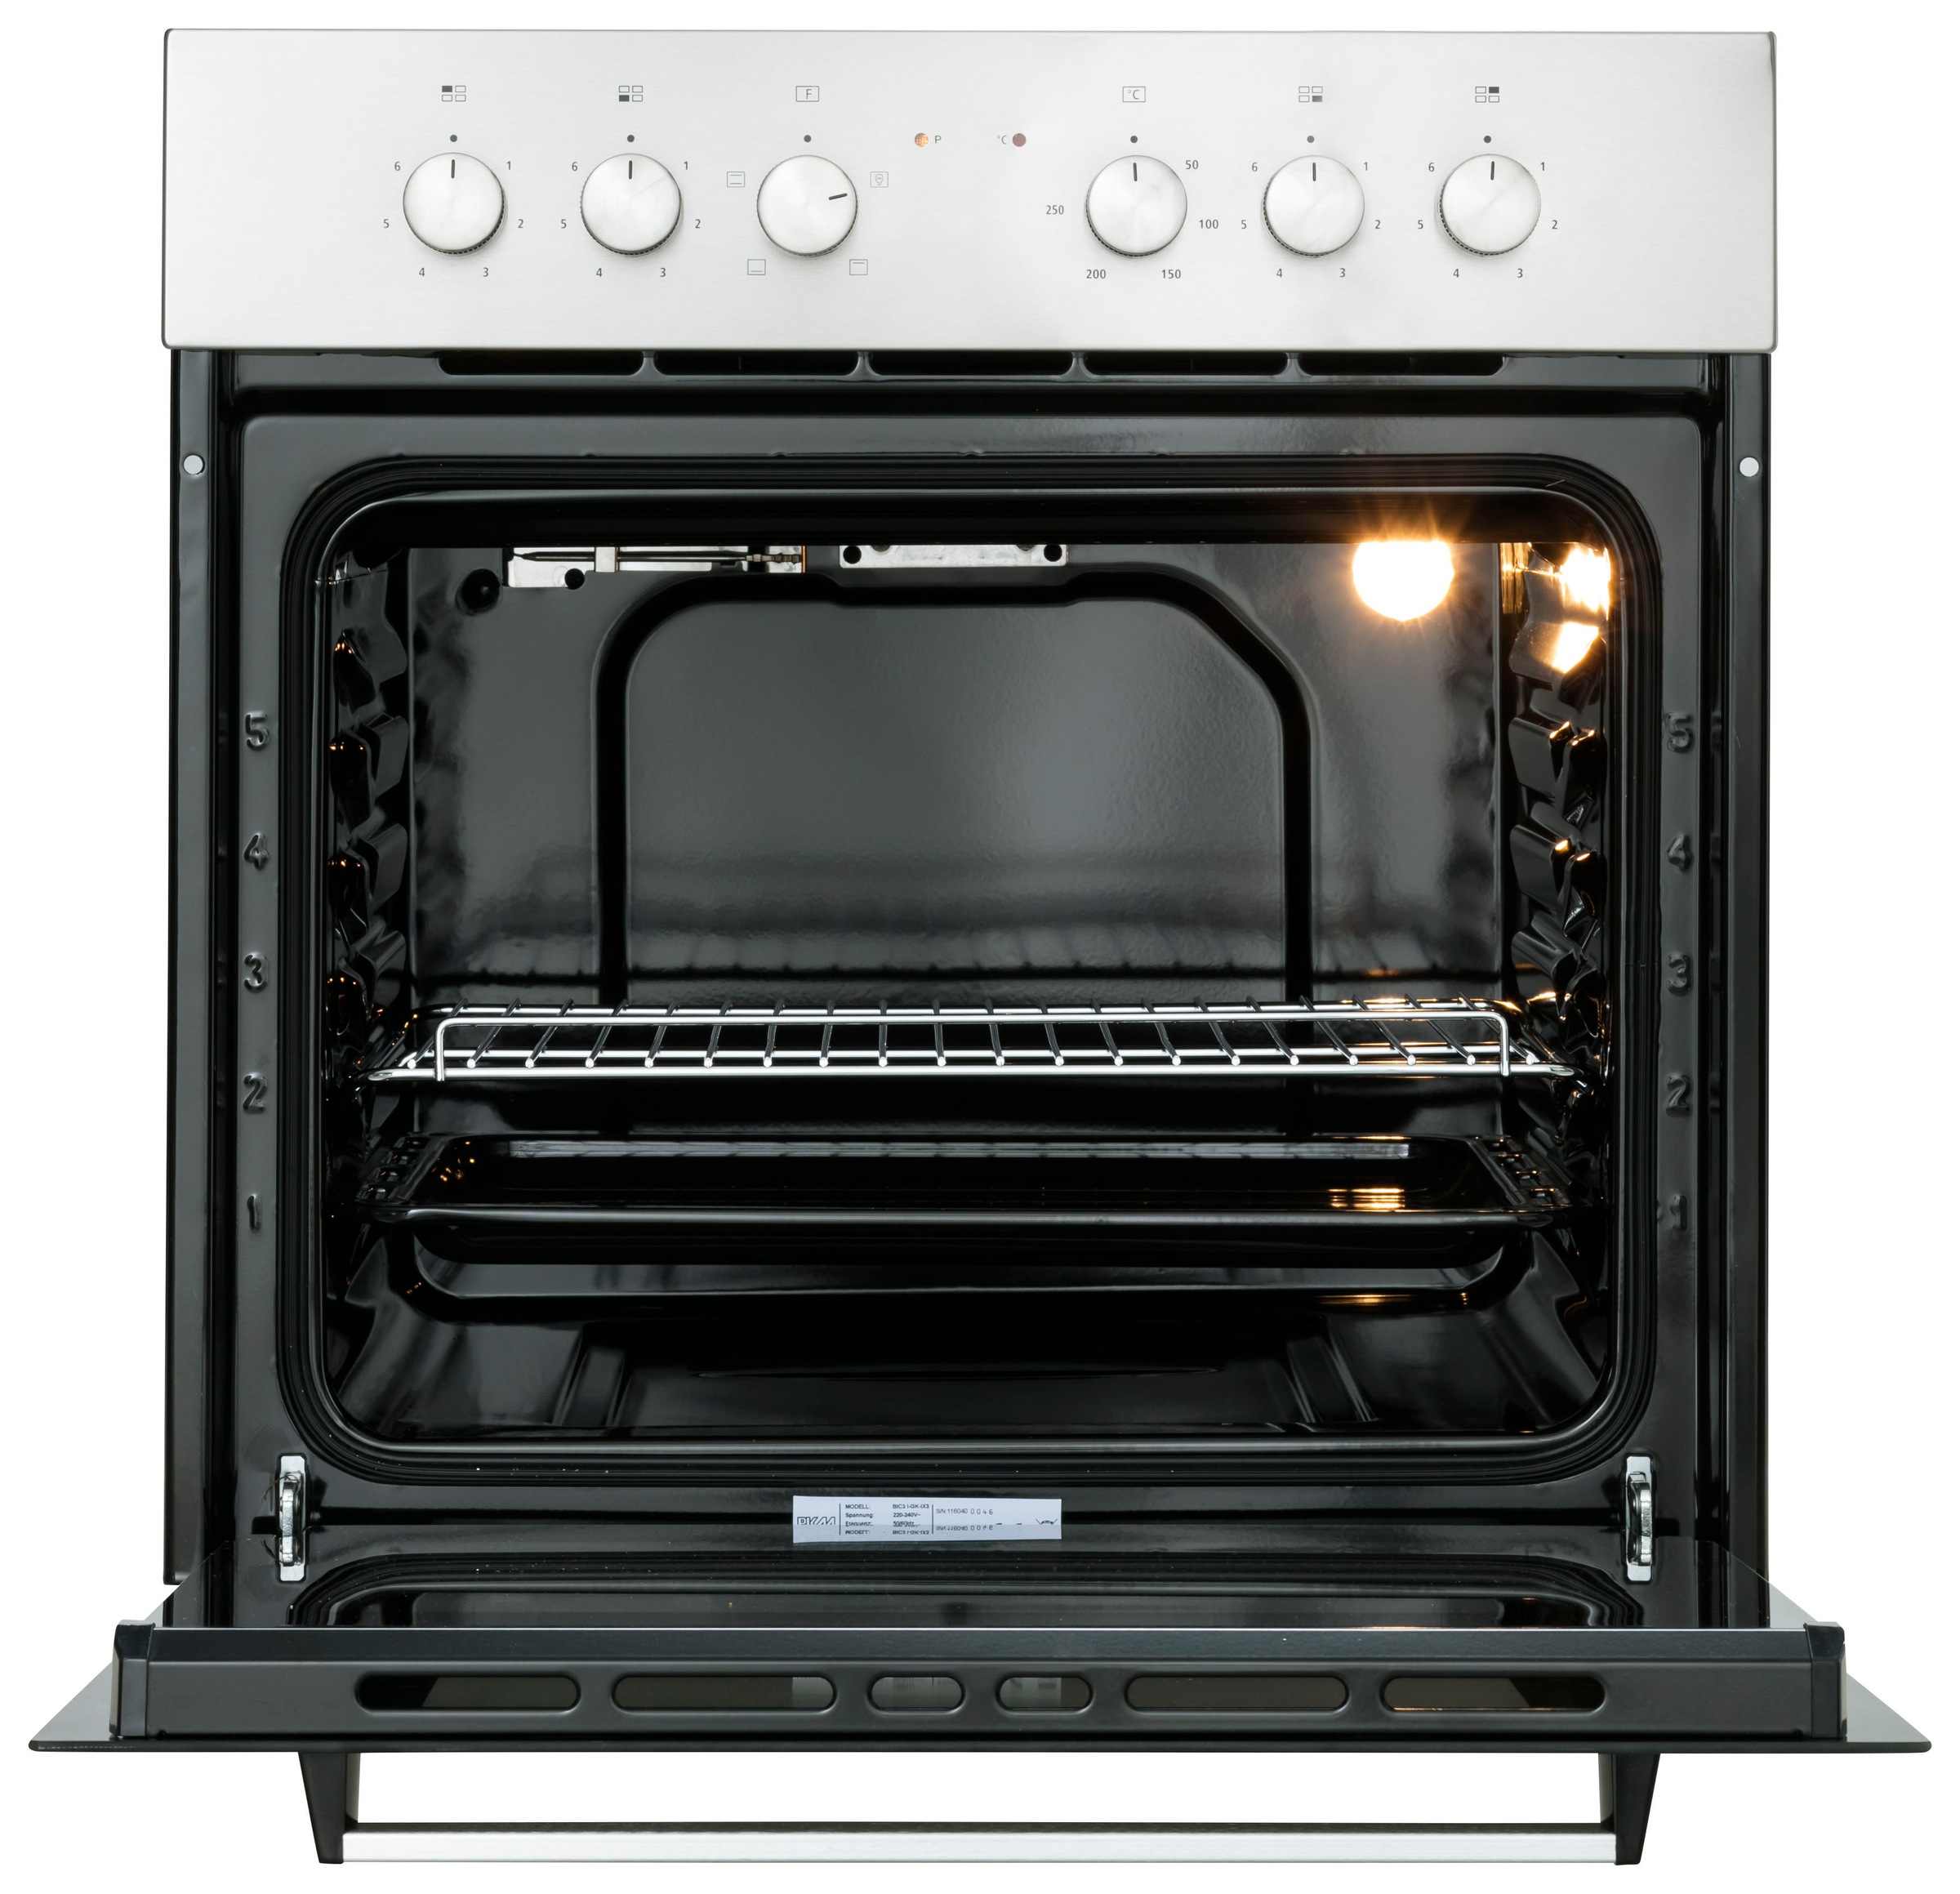 HELD MÖBEL Küchenzeile »Tulsa«, mit E-Geräten, Breite 300 cm, schwarze Metallgriffe, MDF Fronten